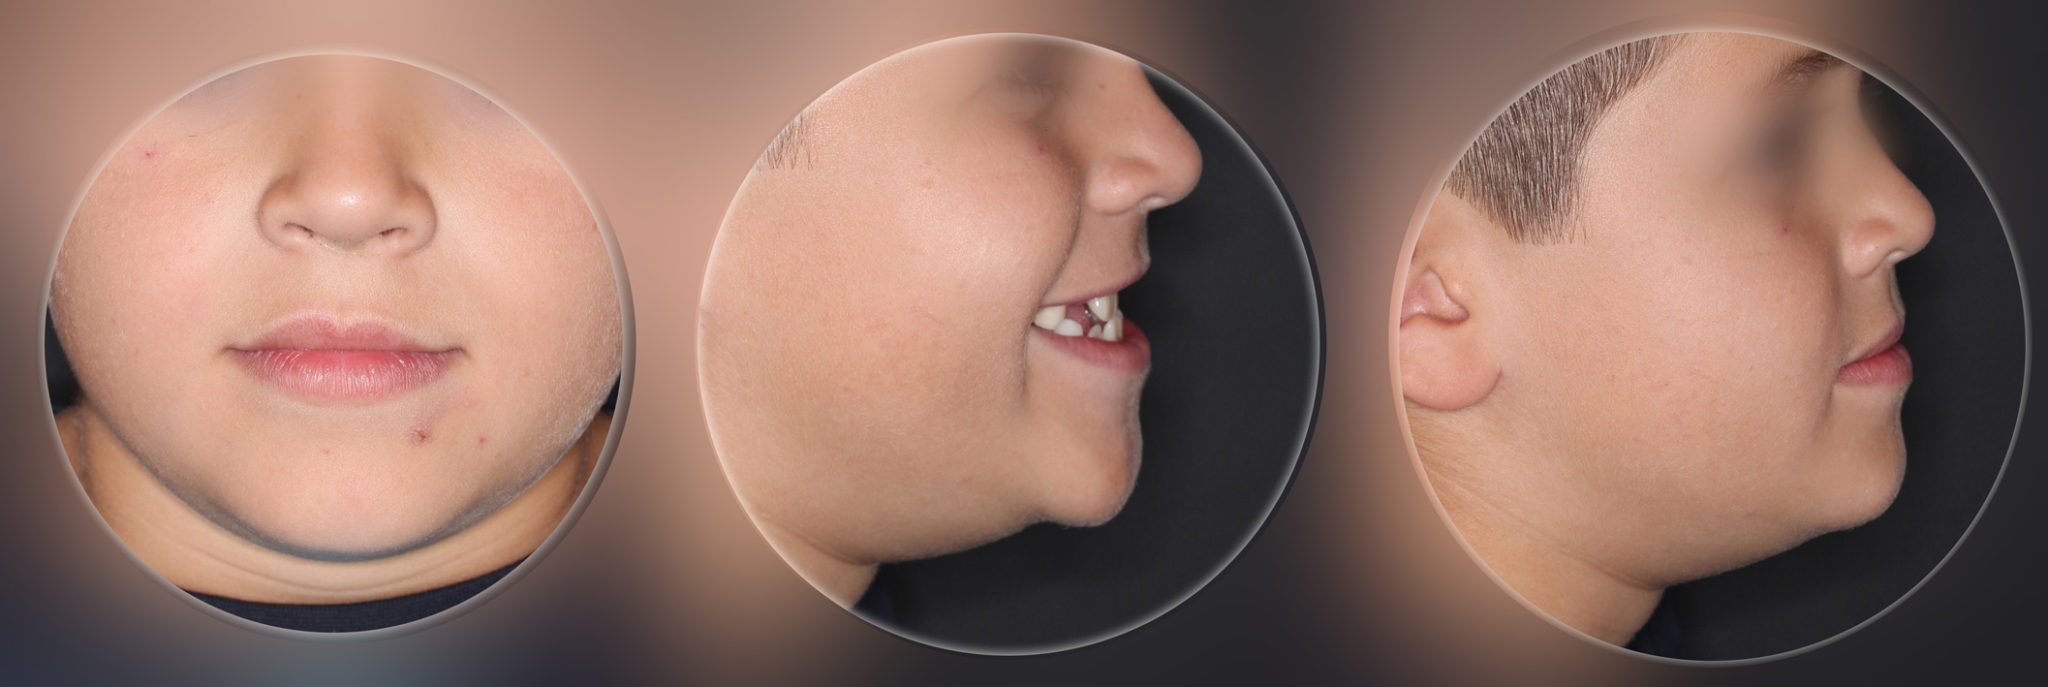 Primera fase de Tratamiento de Ortodoncia Infantil - Antes y Después